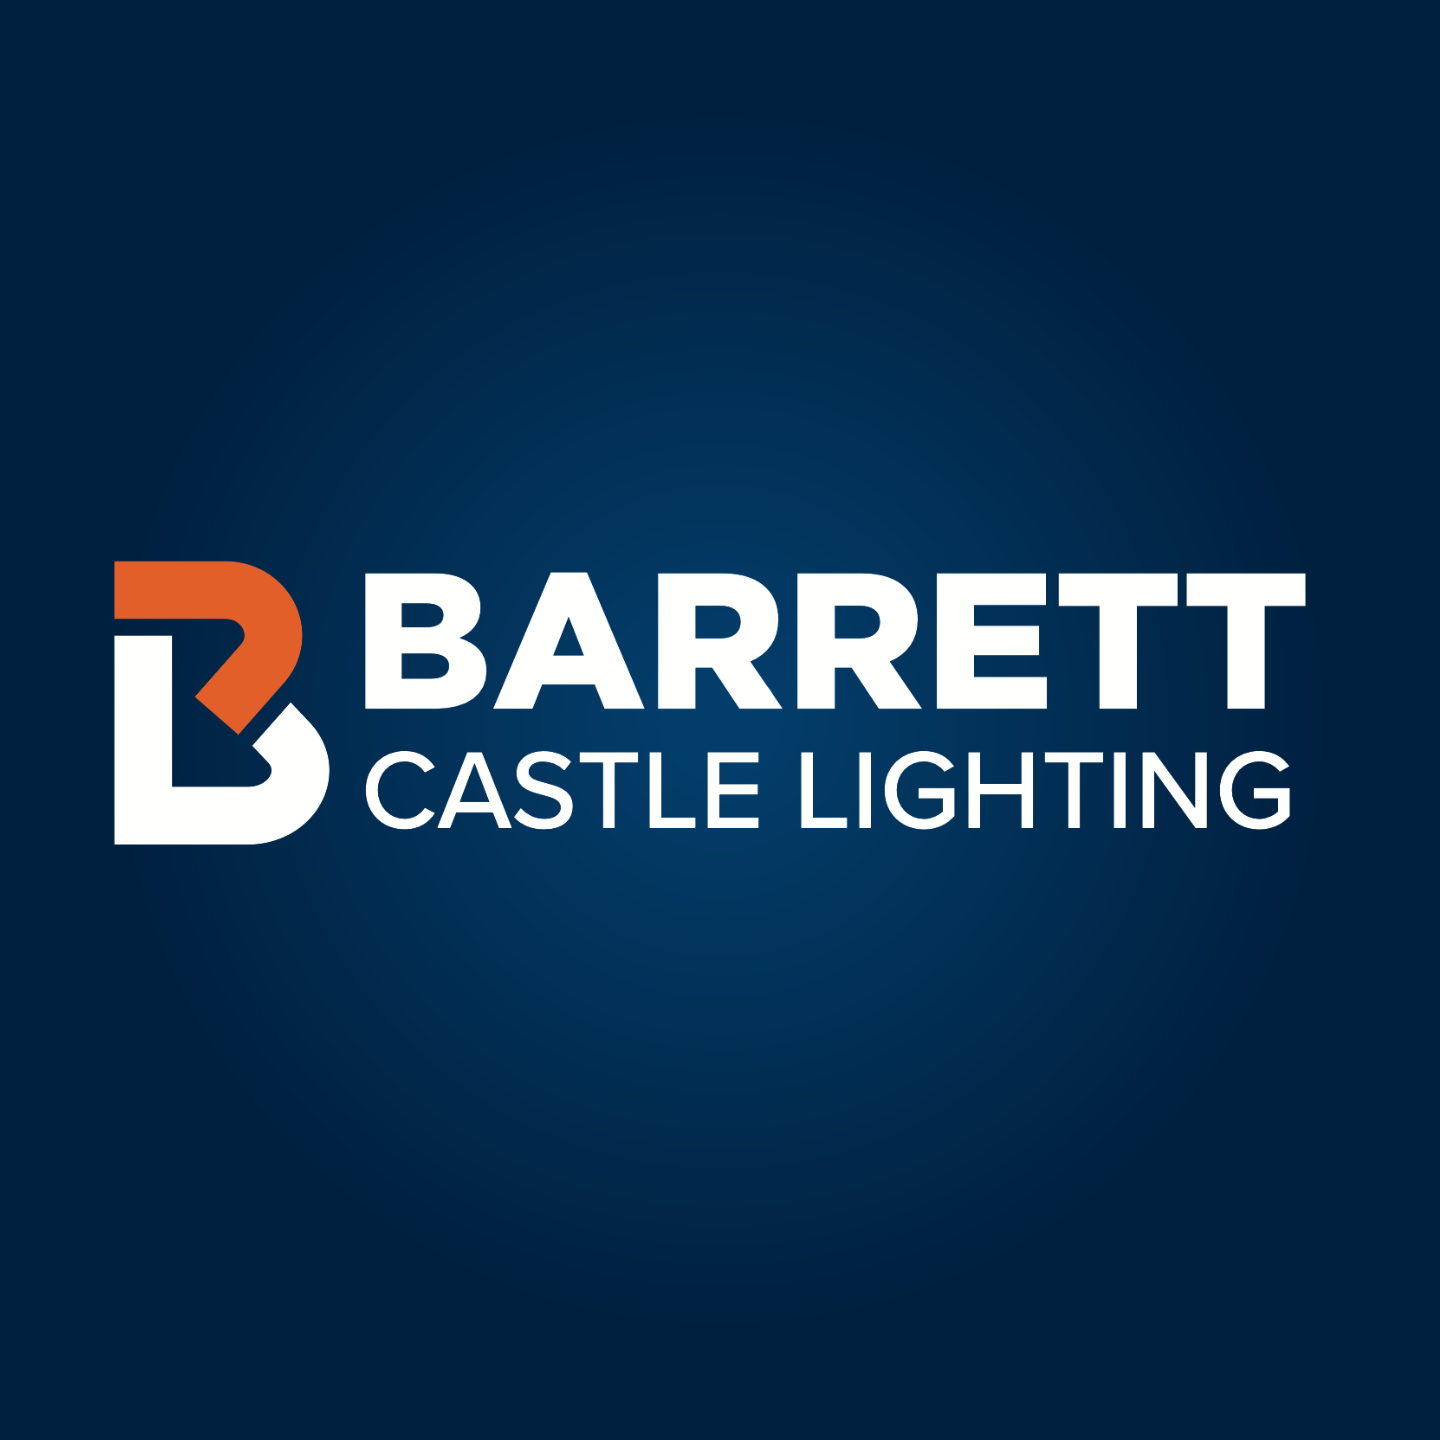 Barrett Castle Lighting